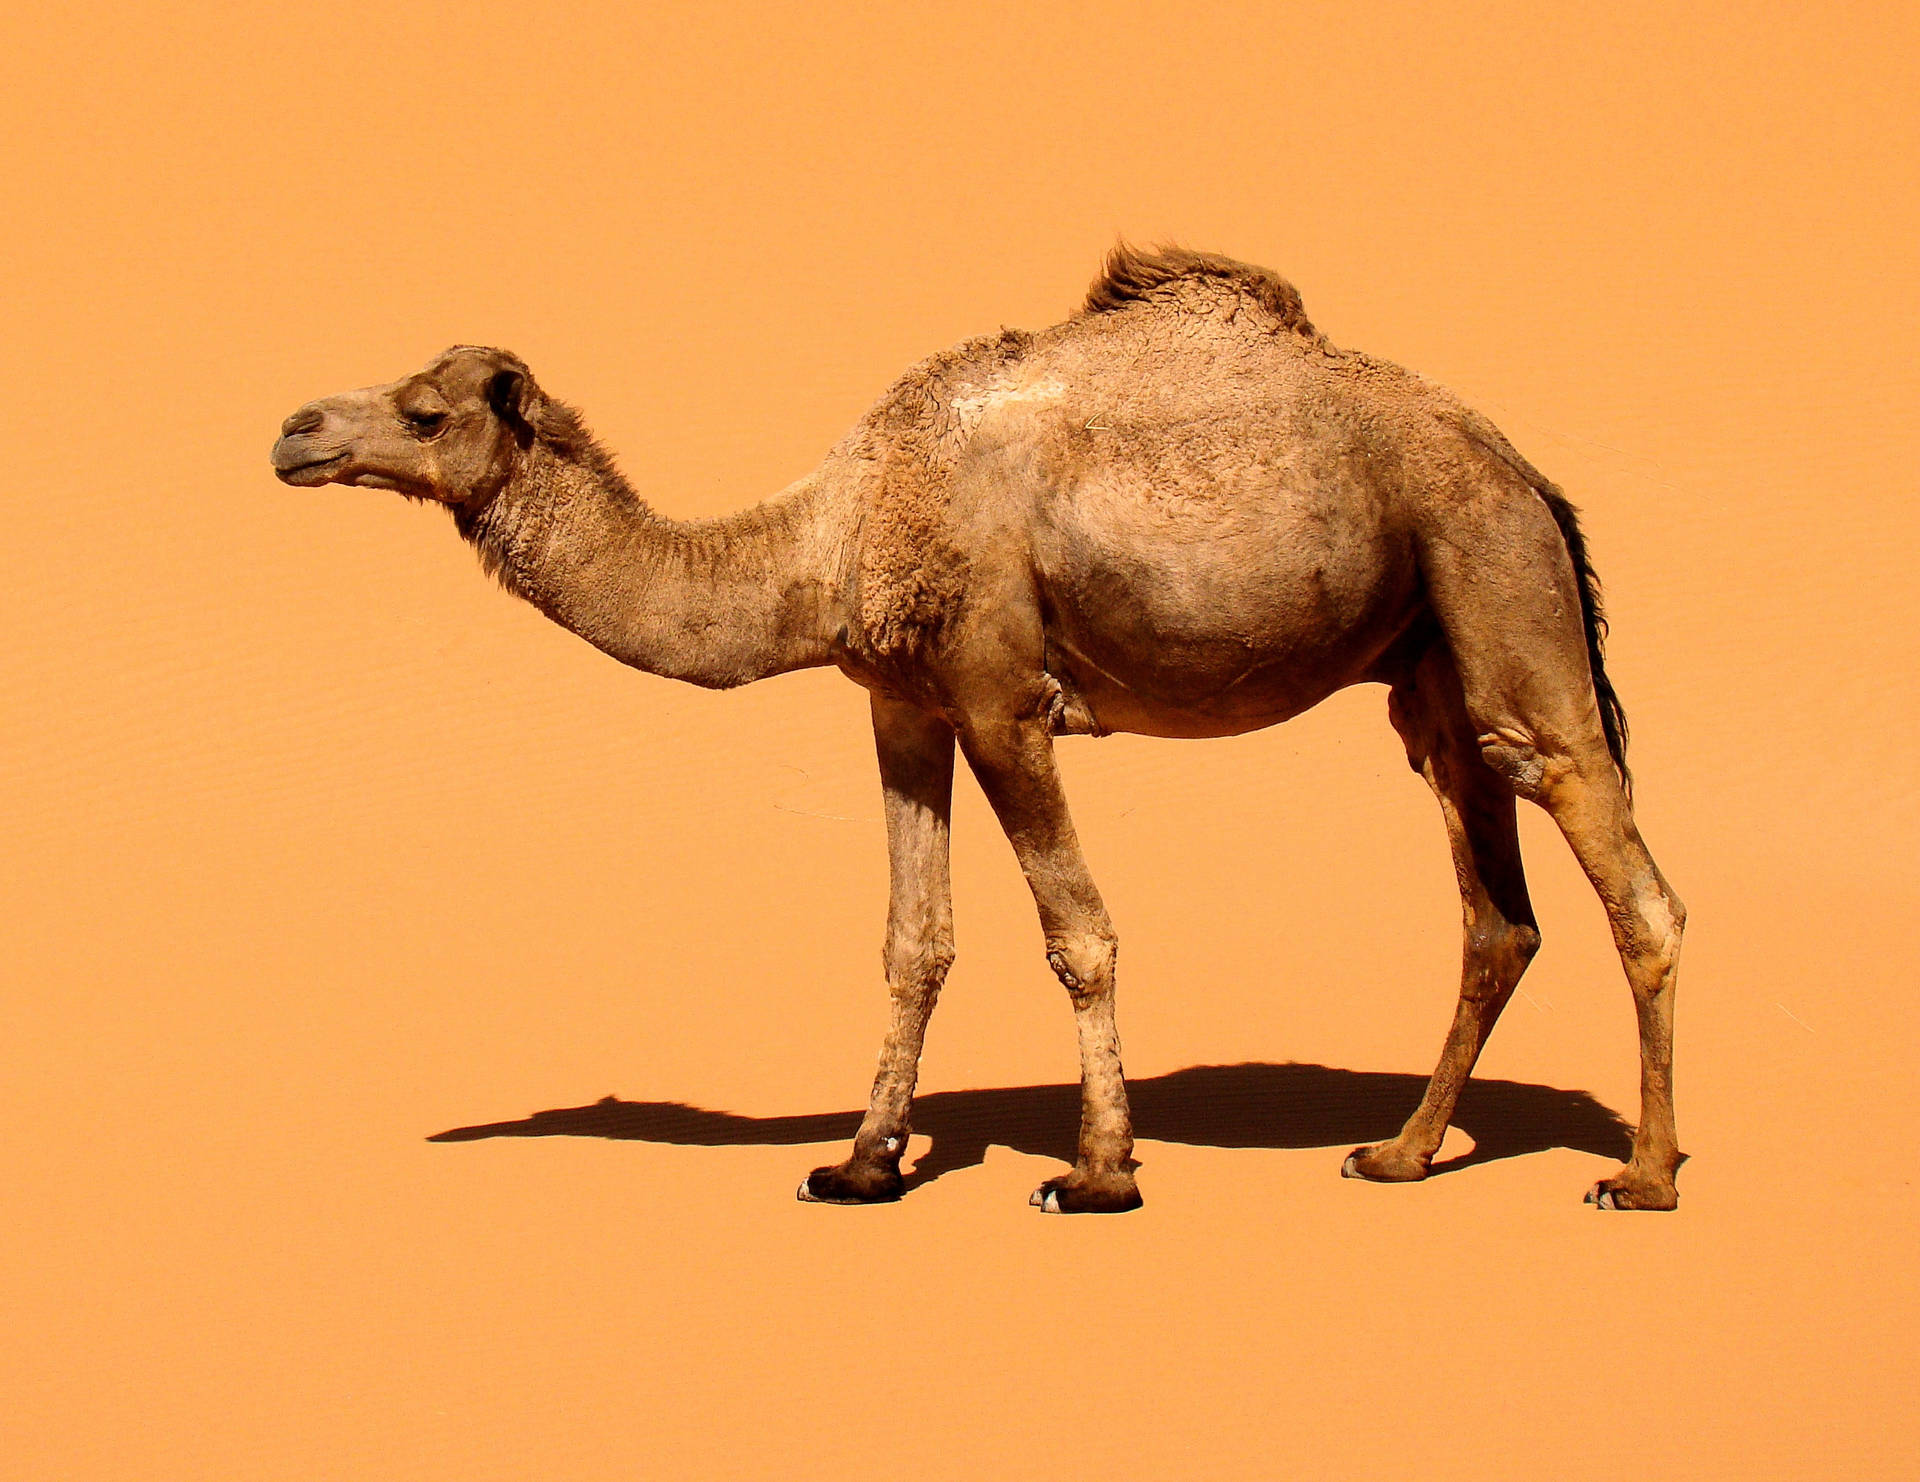 Minimalist Image Of Camel Background